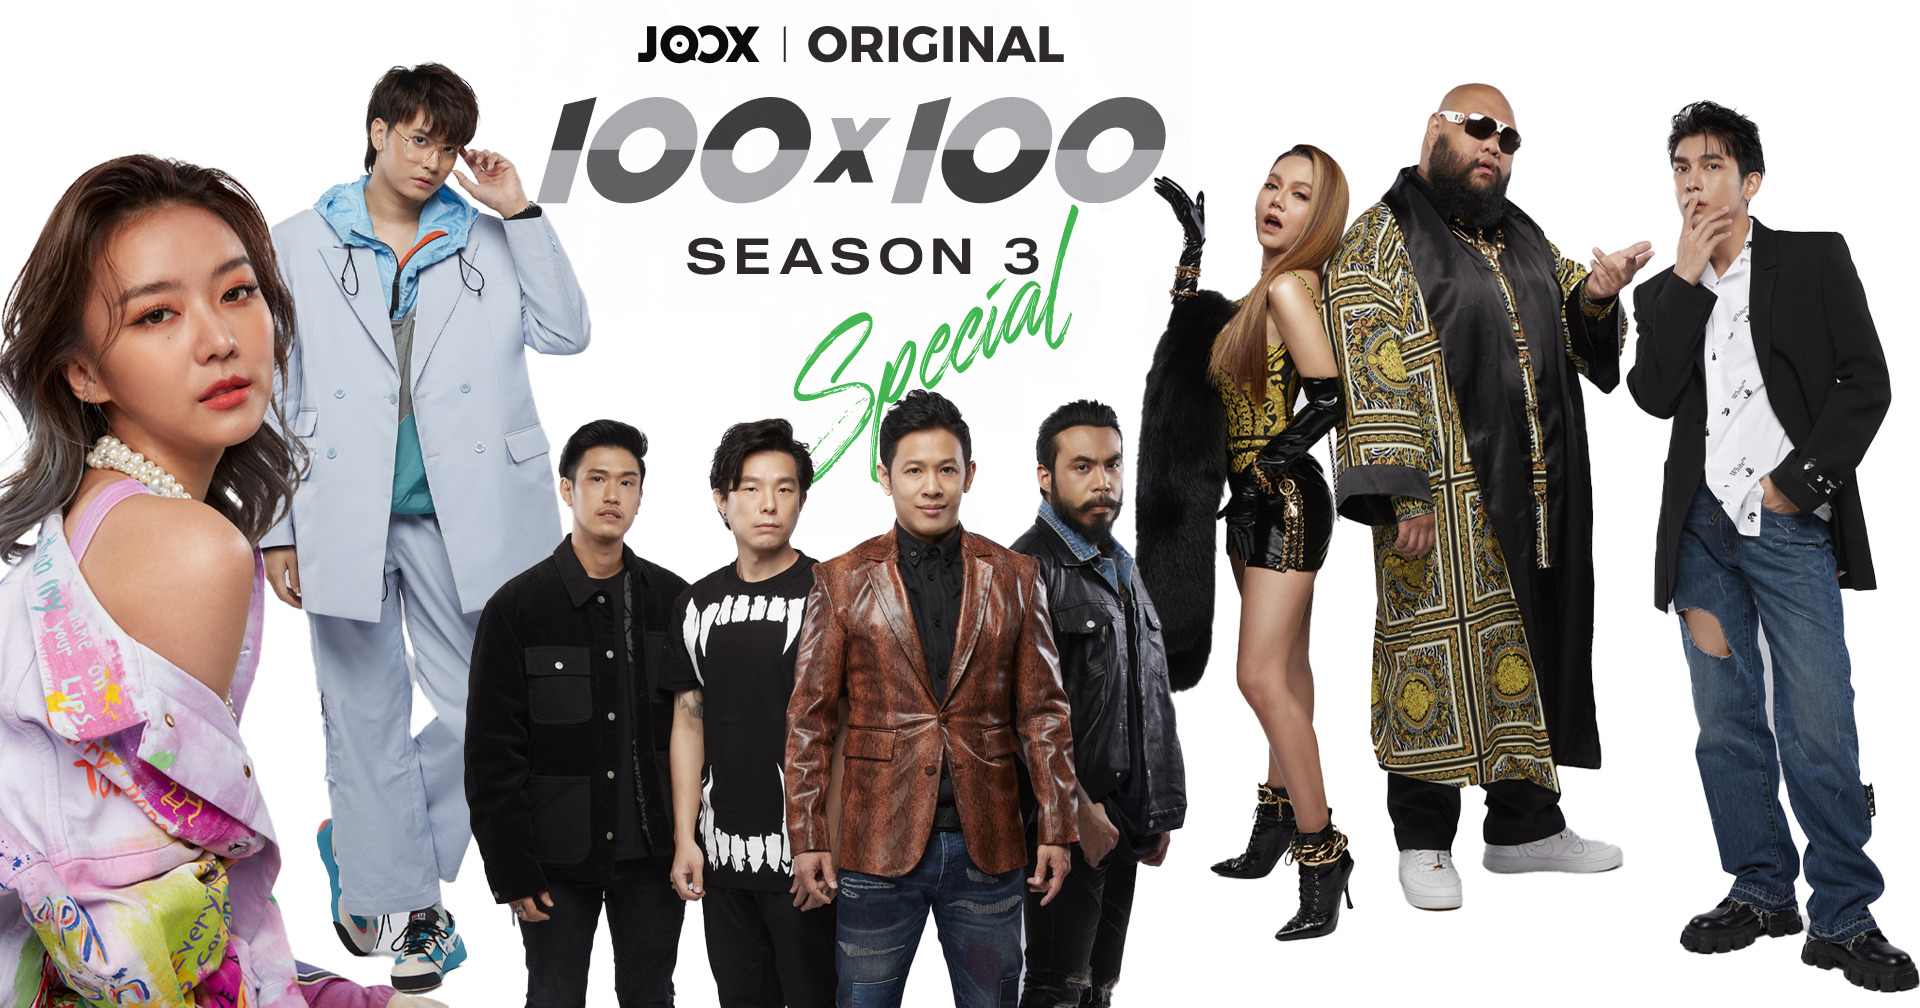 JOOX ORIGINAL 100×100 Season 3 ดัน โอม ค็อกเทล นั่งแท่น Executive Producer